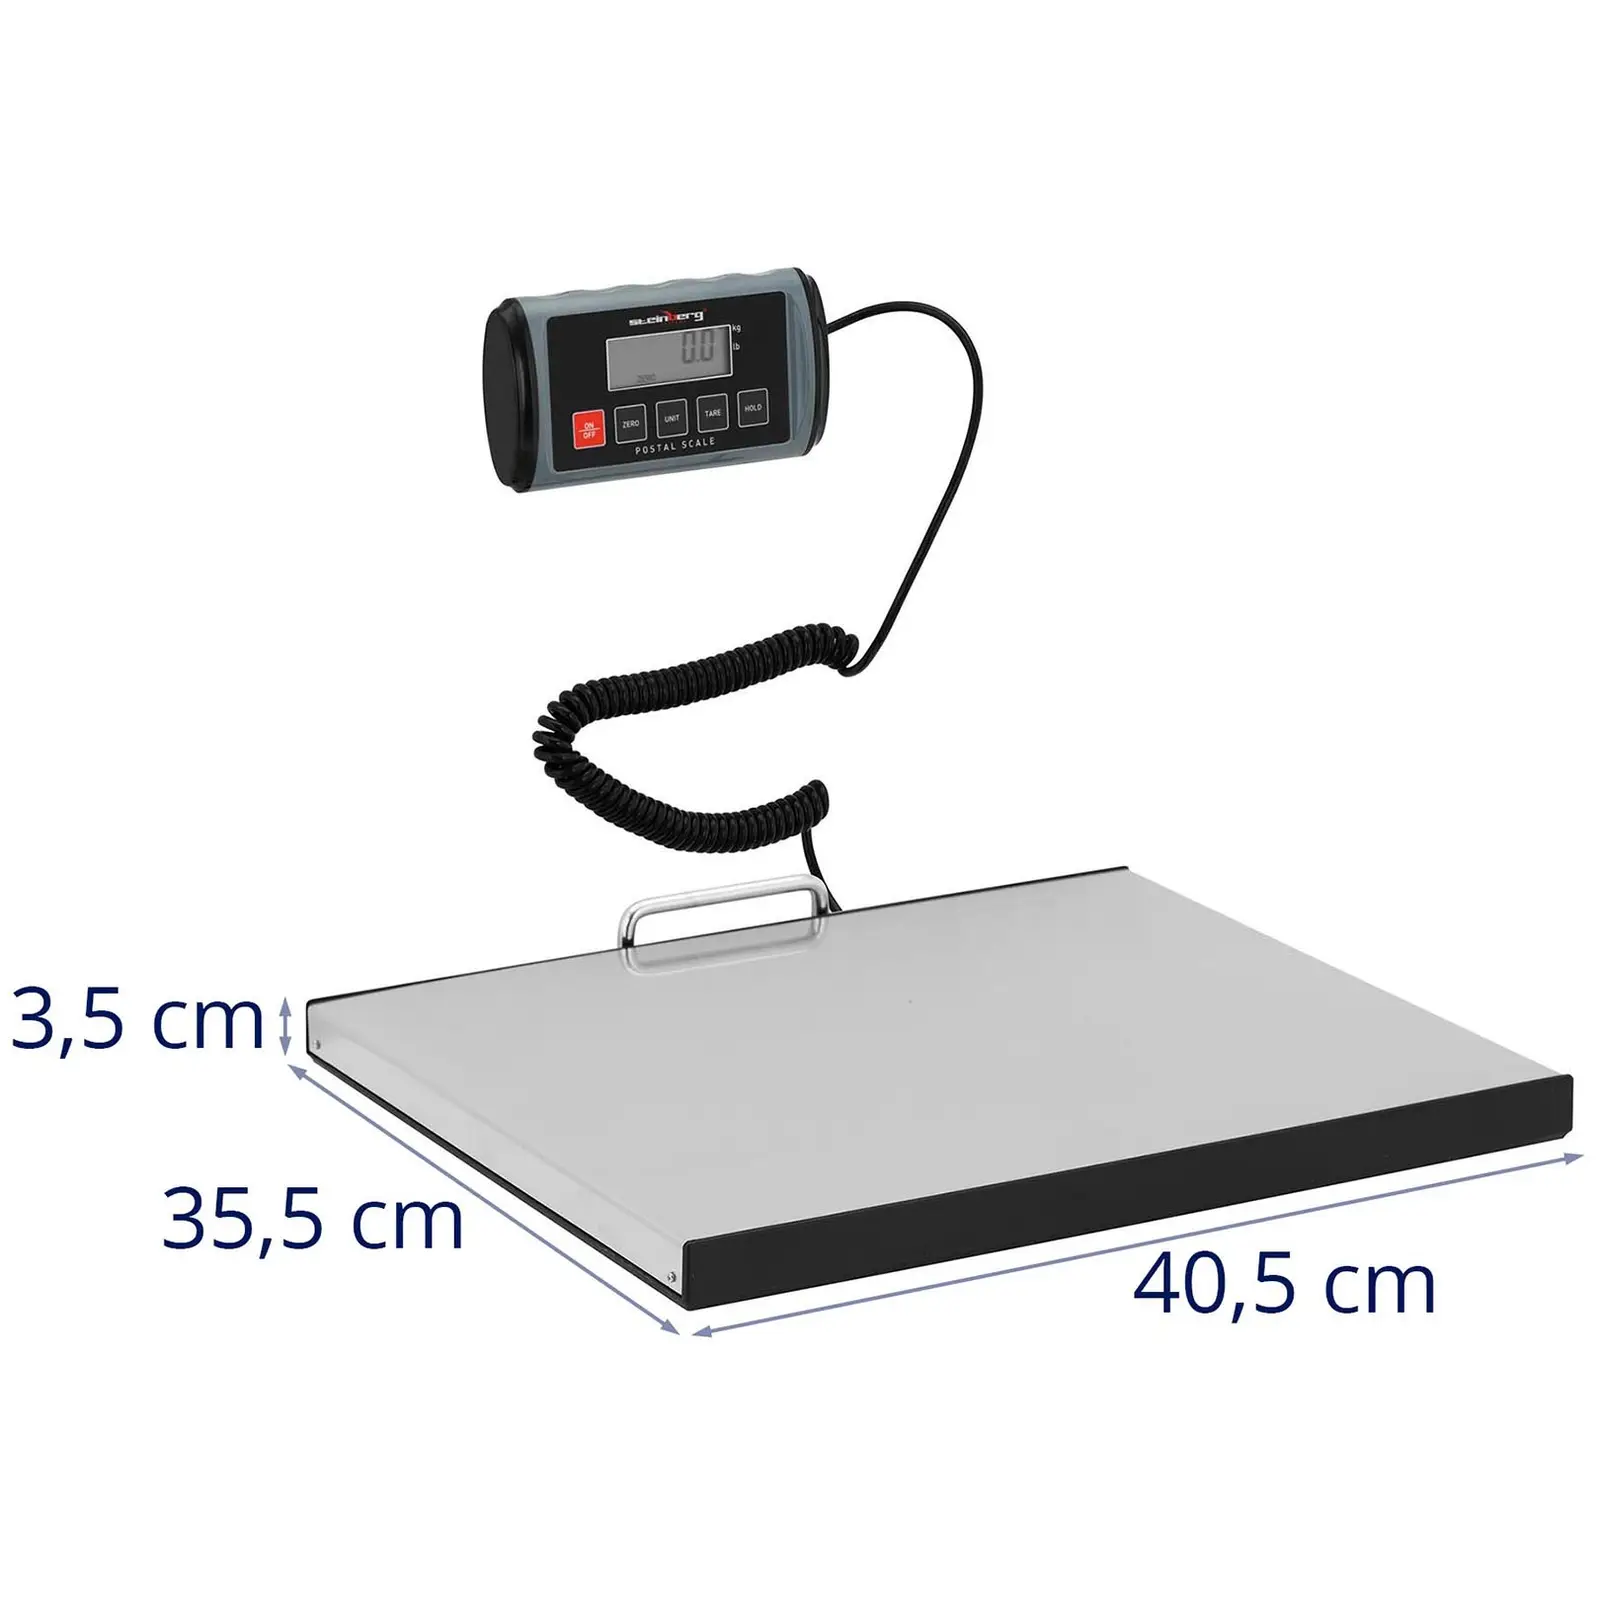 Csomagmérleg - 100 kg / 0,05 kg - 35,5 x 40,5 cm - külső LCD kijelzővel